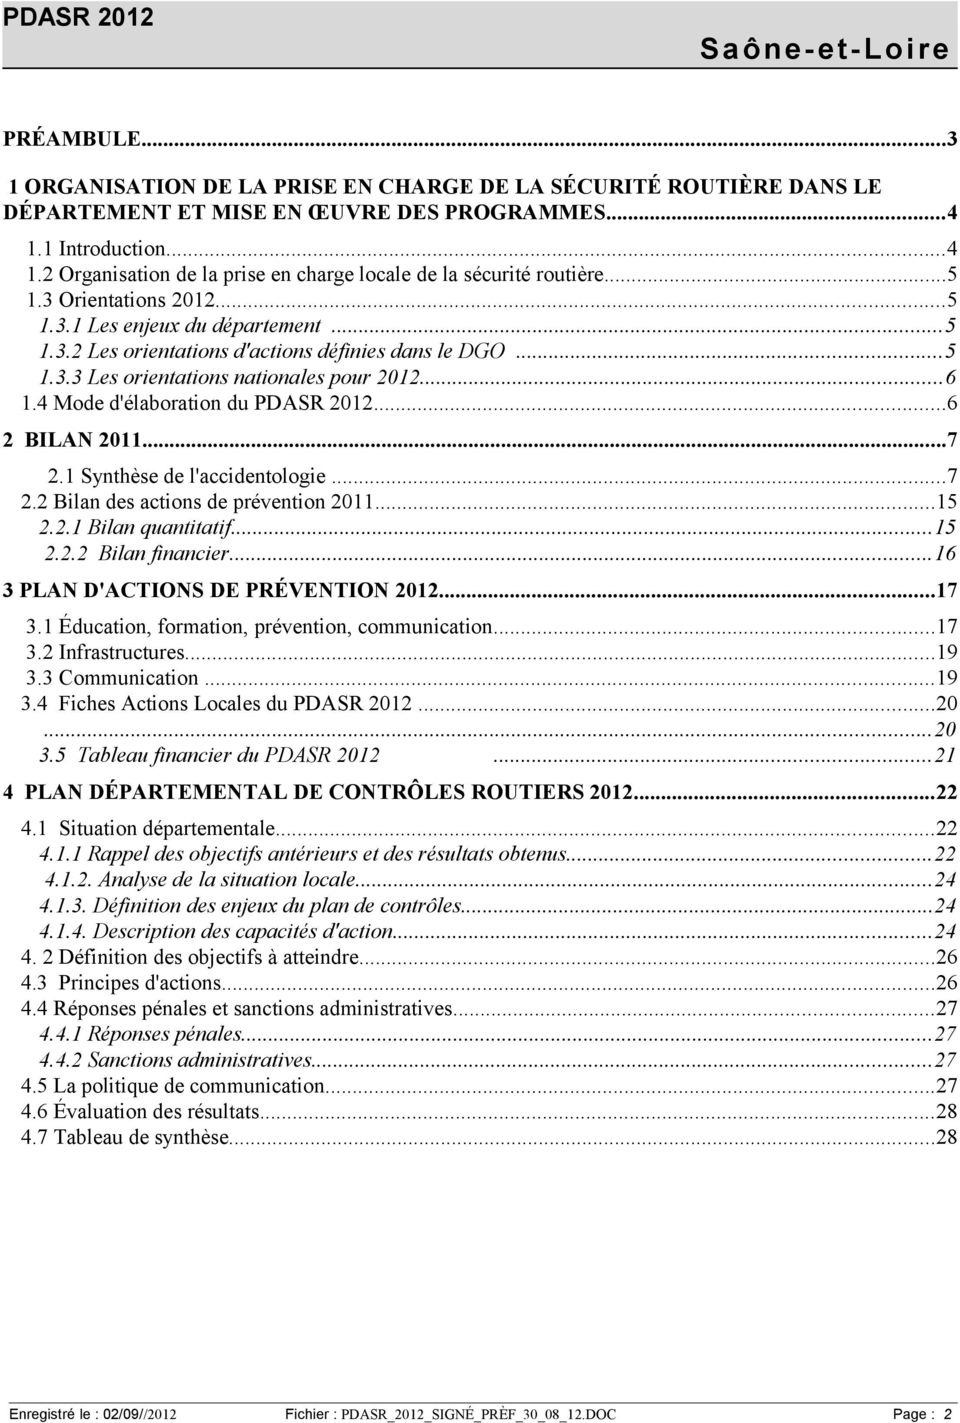 ..5 1.3.3 Les orientations nationales pour 2012...6 1.4 Mode d'élaboration du PDASR 2012...6 2 BILAN 2011...7 2.1 Synthèse de l'accidentologie...7 2.2 Bilan des actions de prévention 2011...15 2.2.1 Bilan quantitatif.